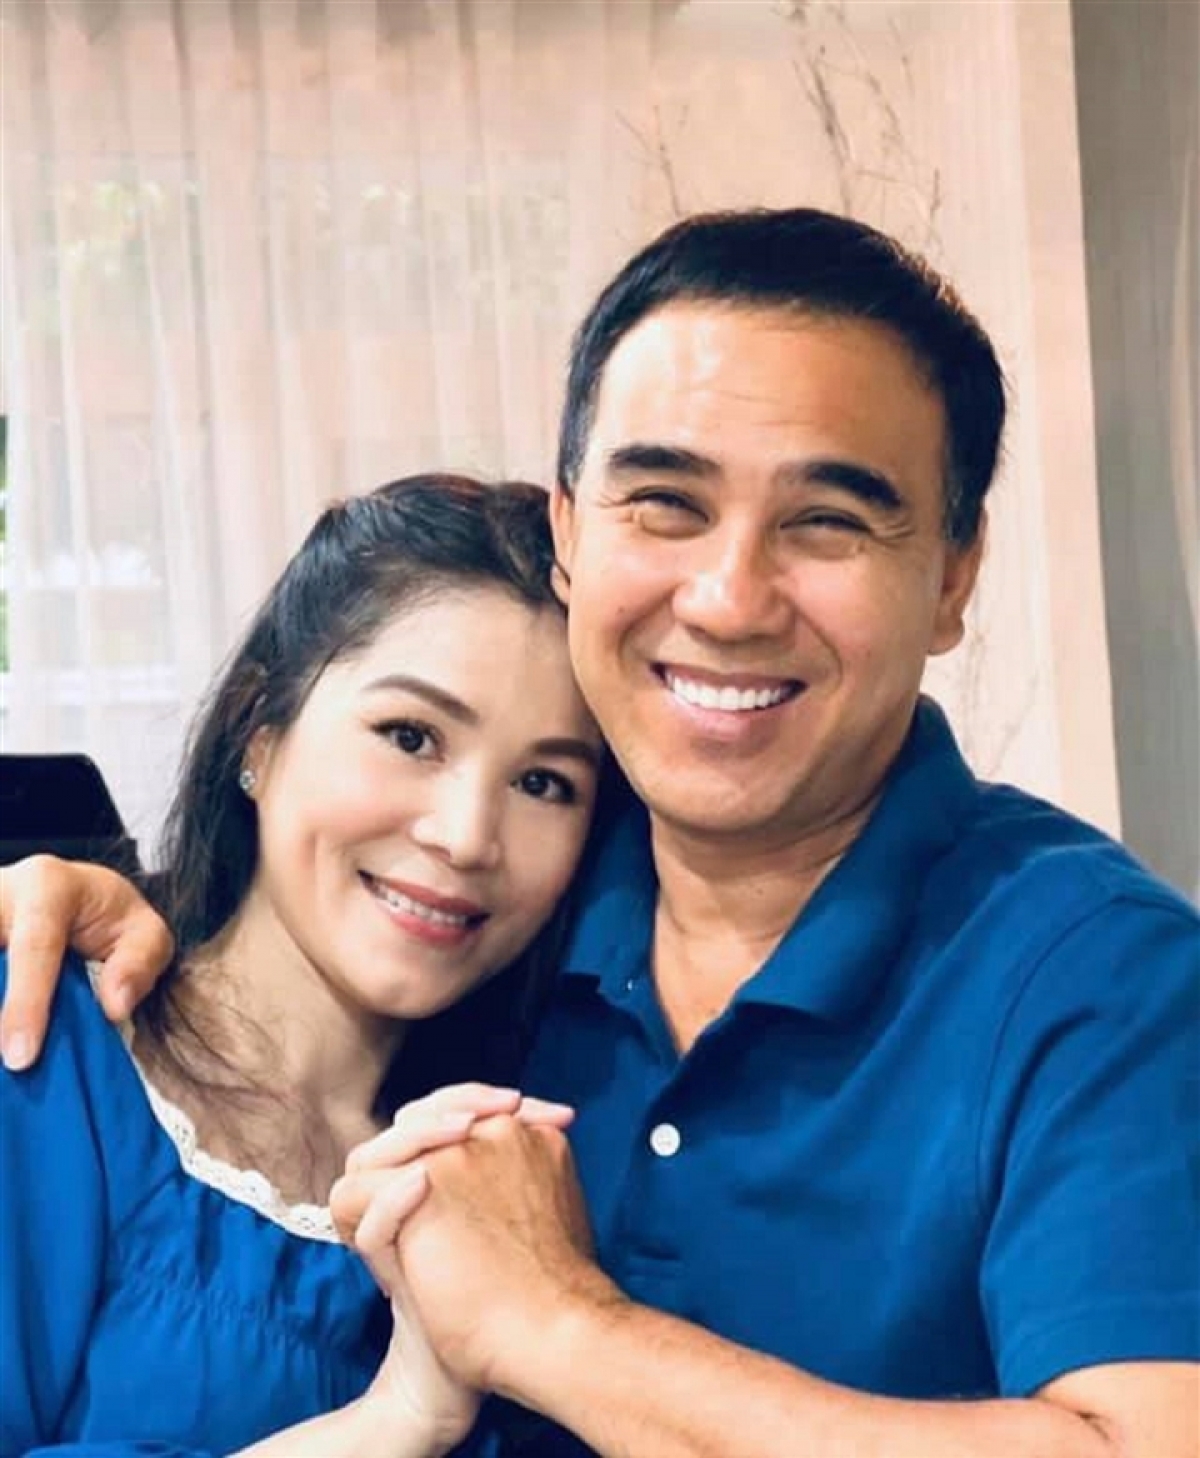 MC Quyền Linh và bà xã Dạ Thảo đã có gần 2 thập kỷ chung sống bên nhau, và lúc nào vợ chồng anh cũng tình cảm